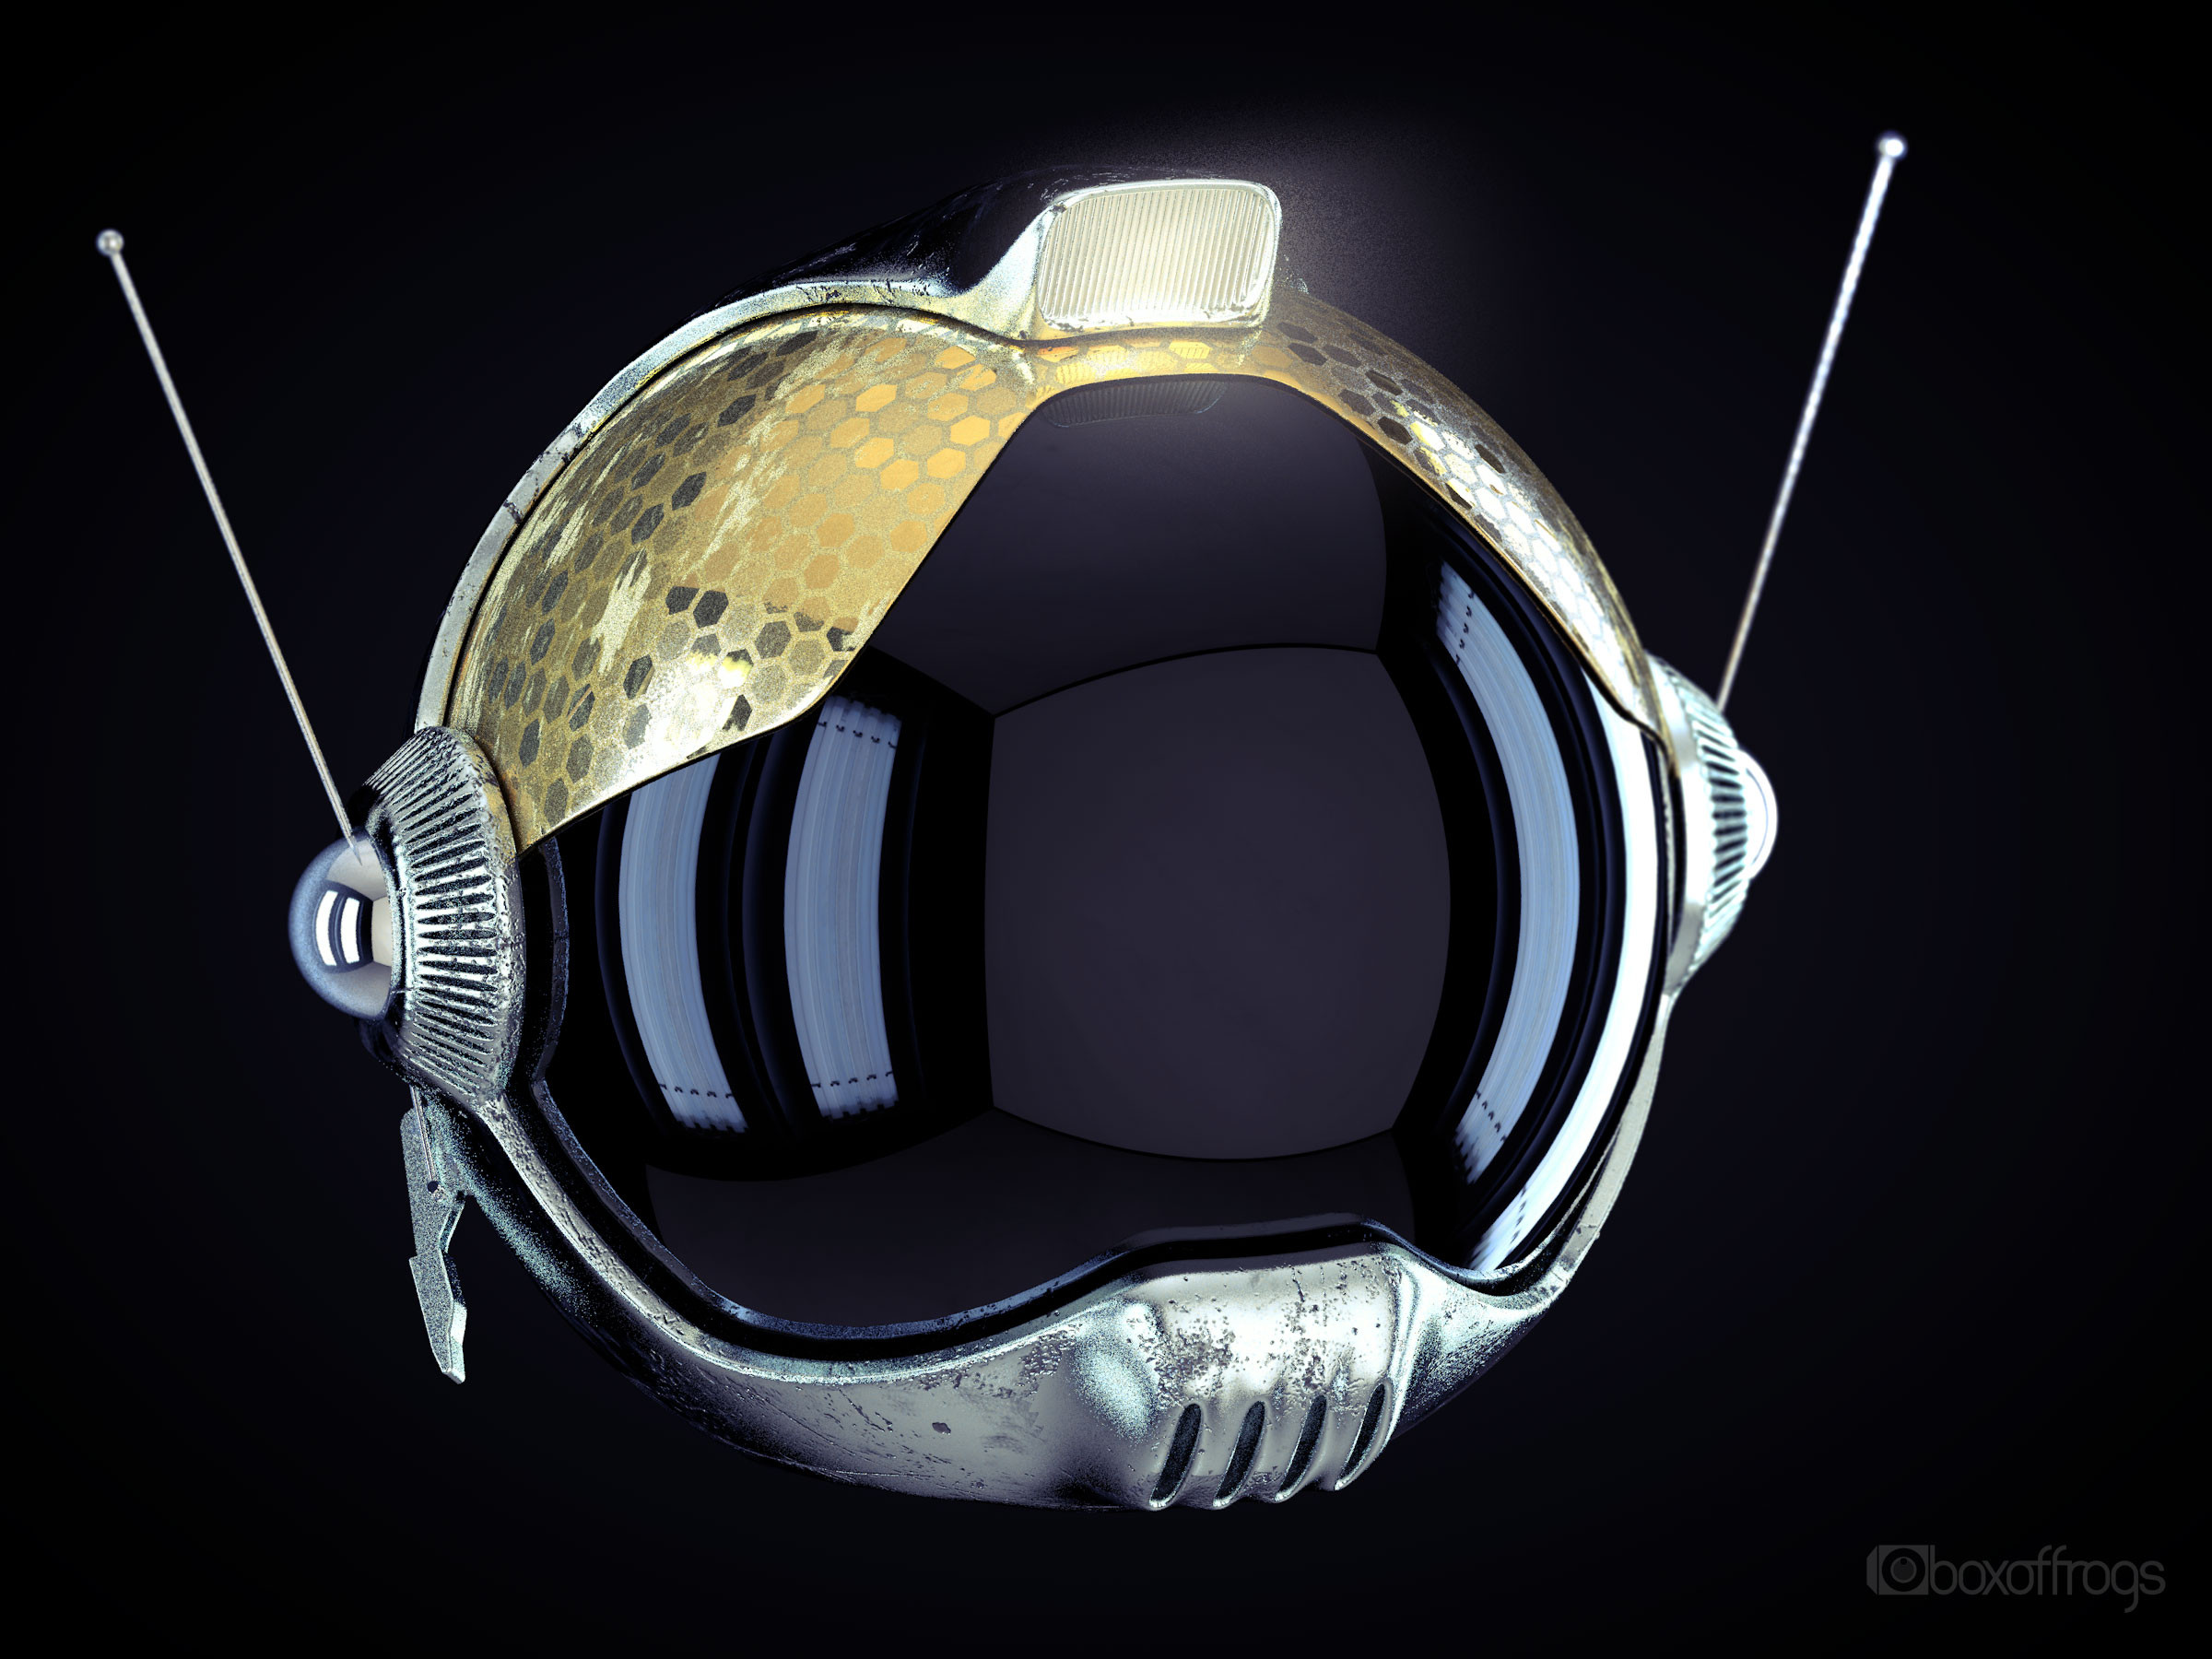 Retro futuristic helmet for retro futuristic astronaut